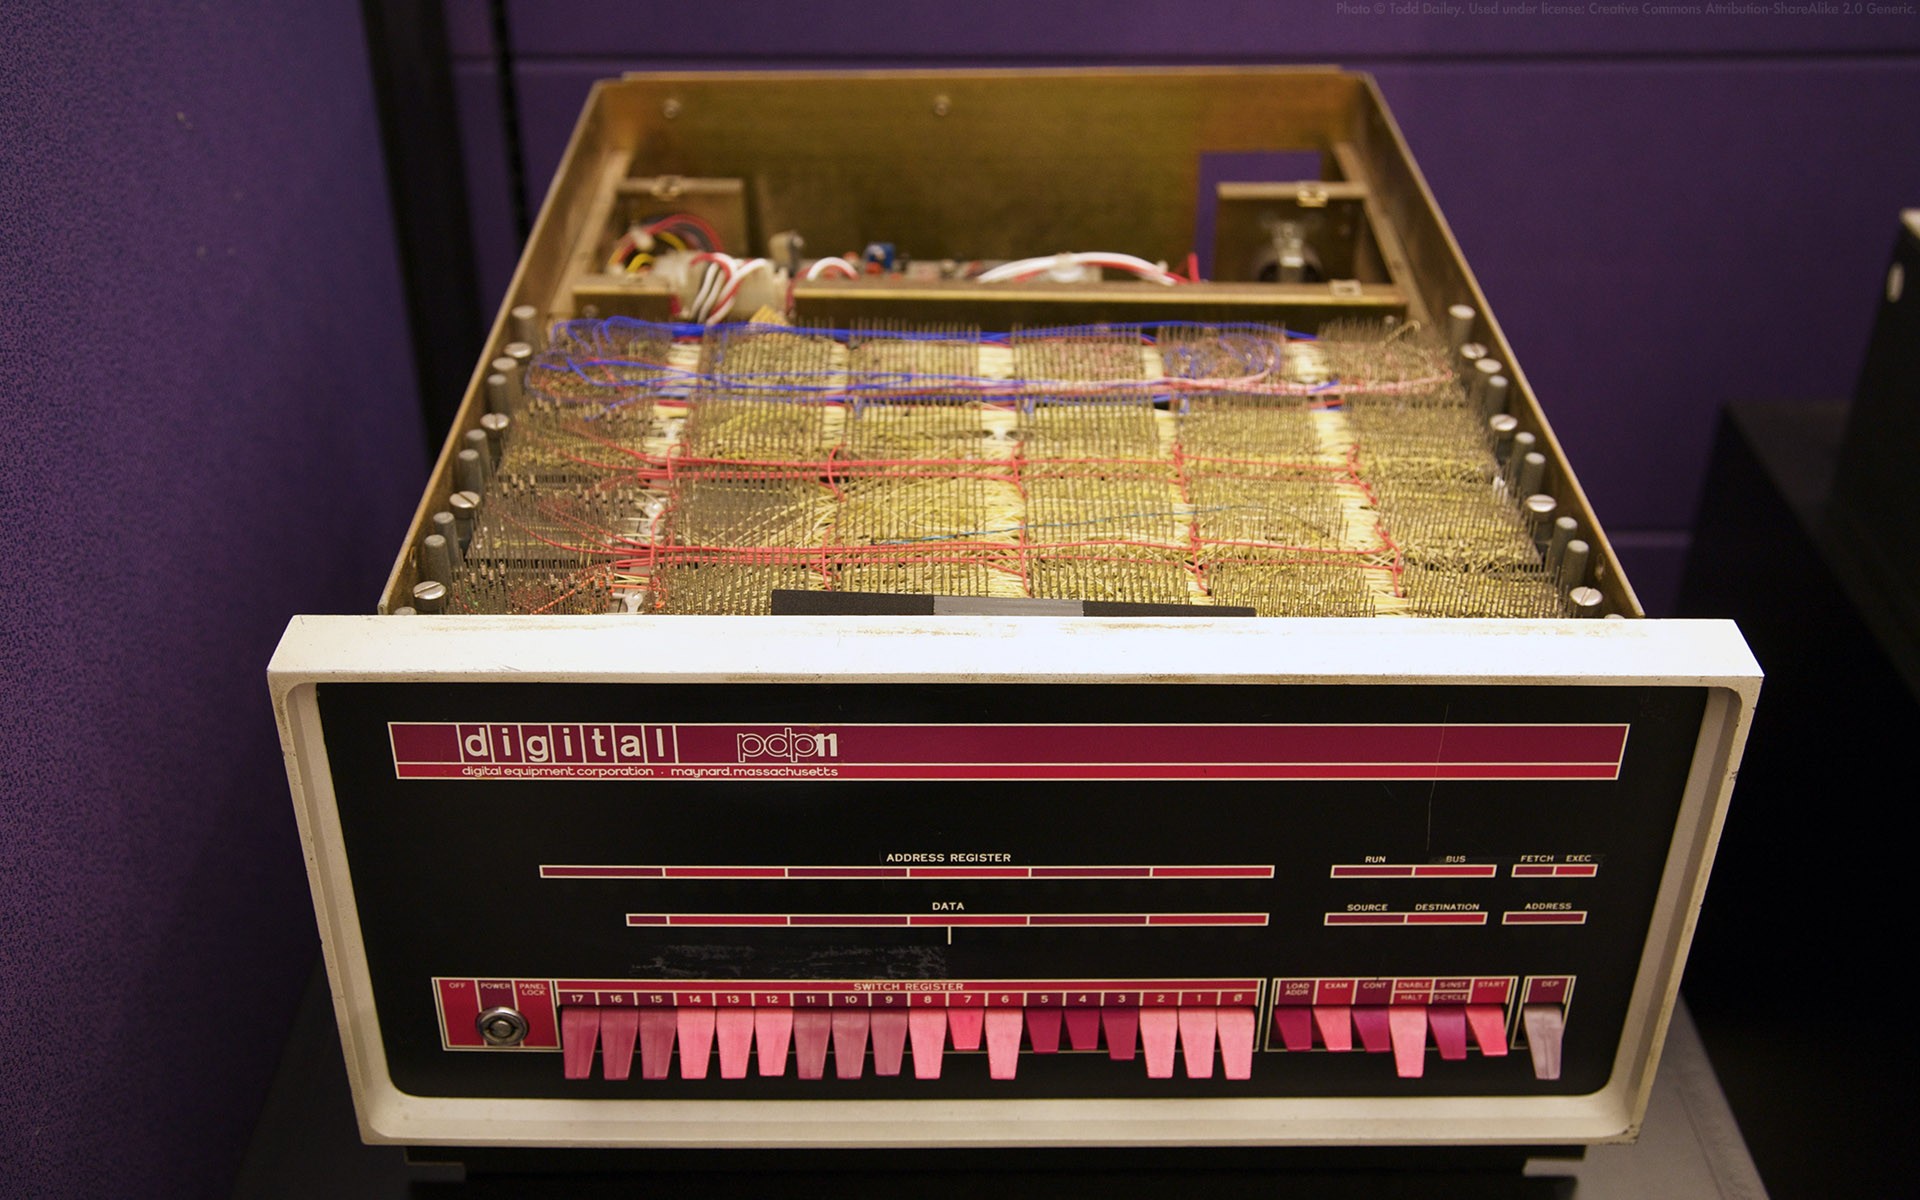 история компьютеров, декабрь, PDP- 11 - обои на рабочий стол